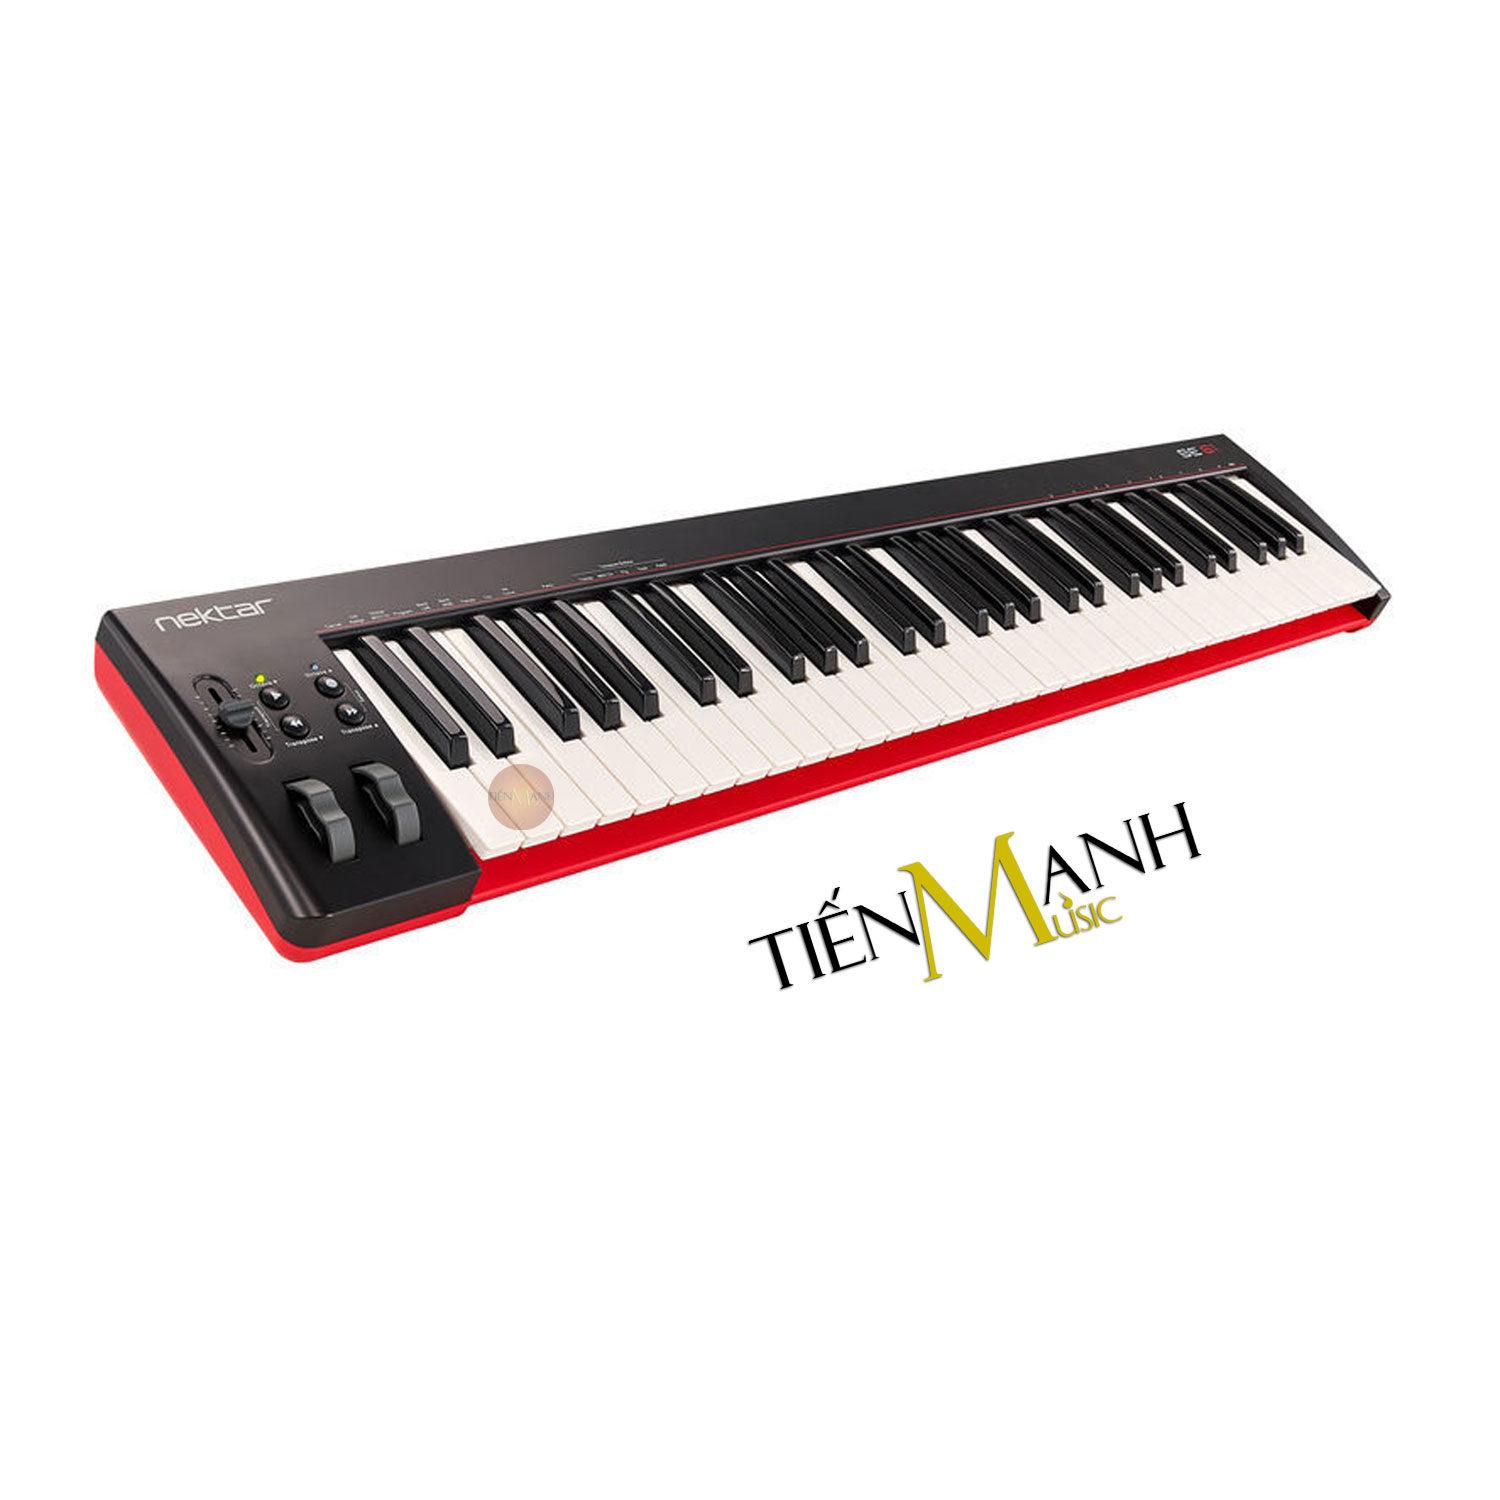 Gia-re-Nektar-SE61-Midi-Keyboard-Controller-Tiki